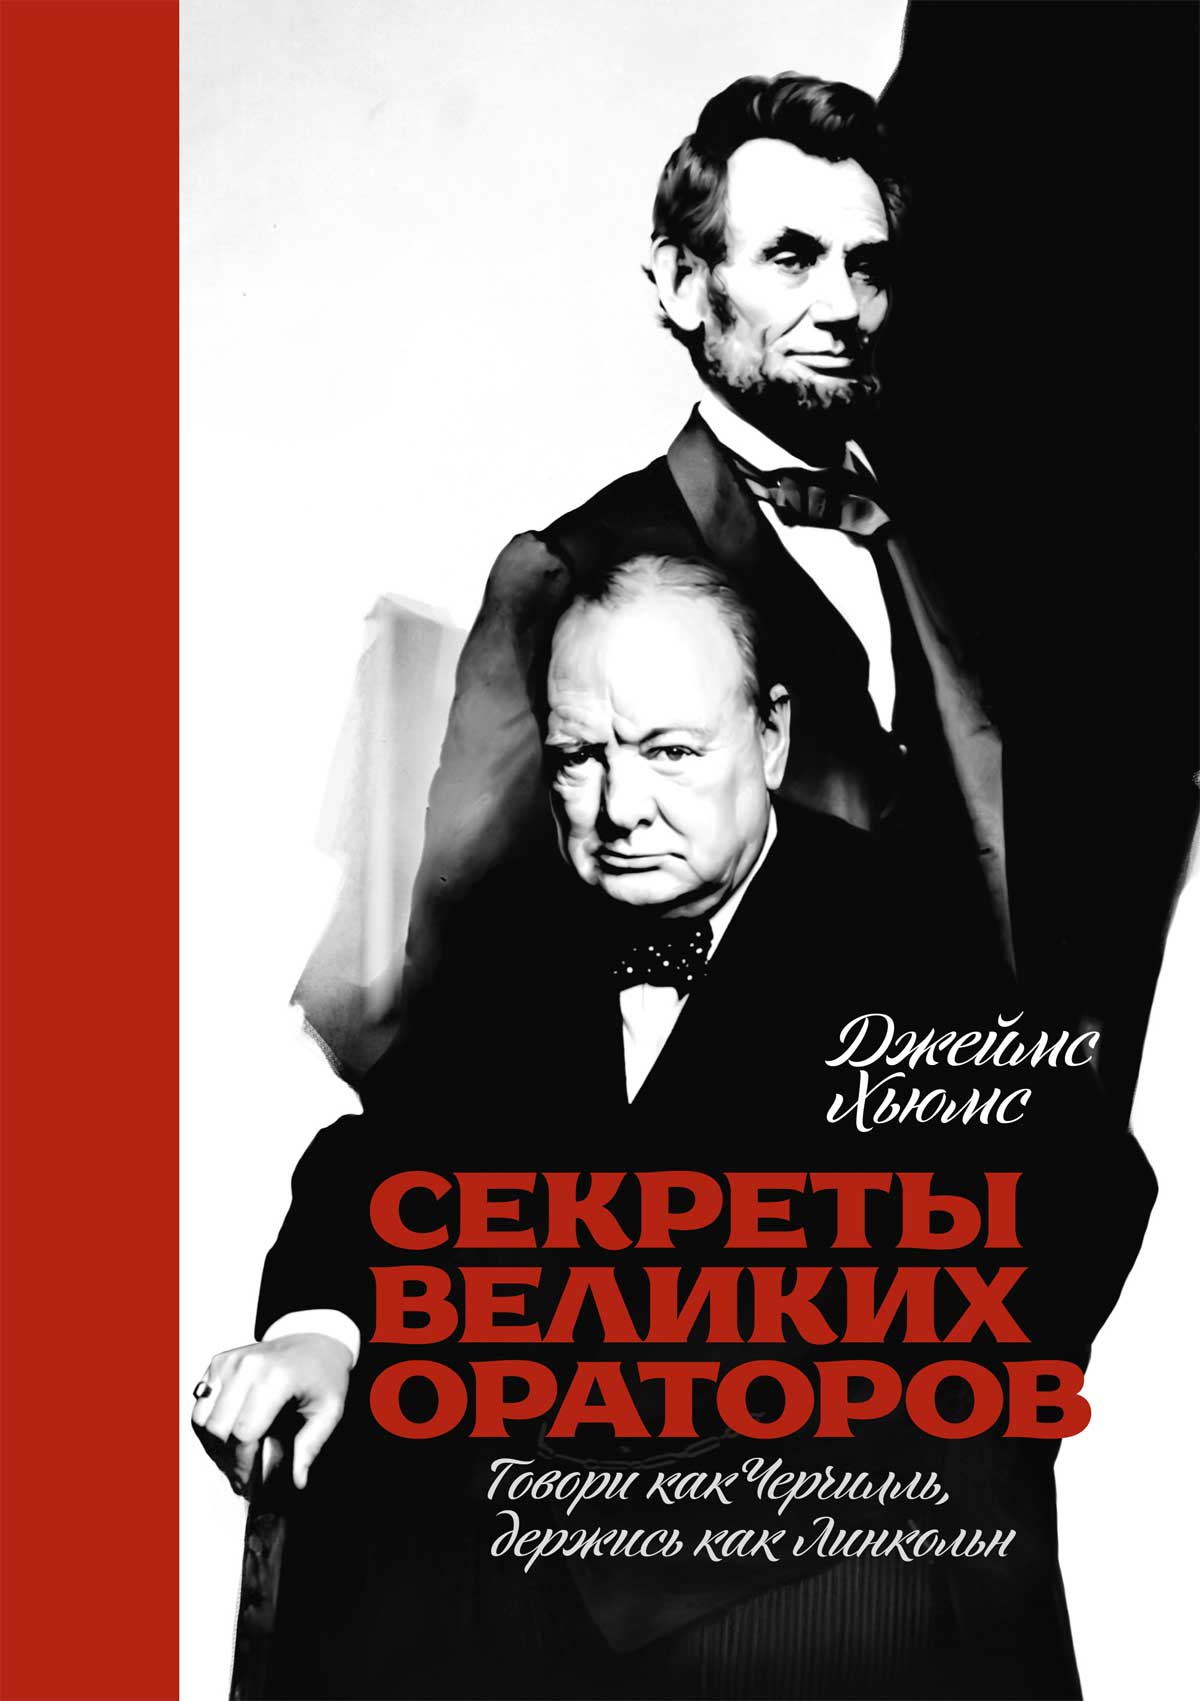 Обложка книги "Секреты великих ораторов. Говори как Черчилль, держись как Линкольн"